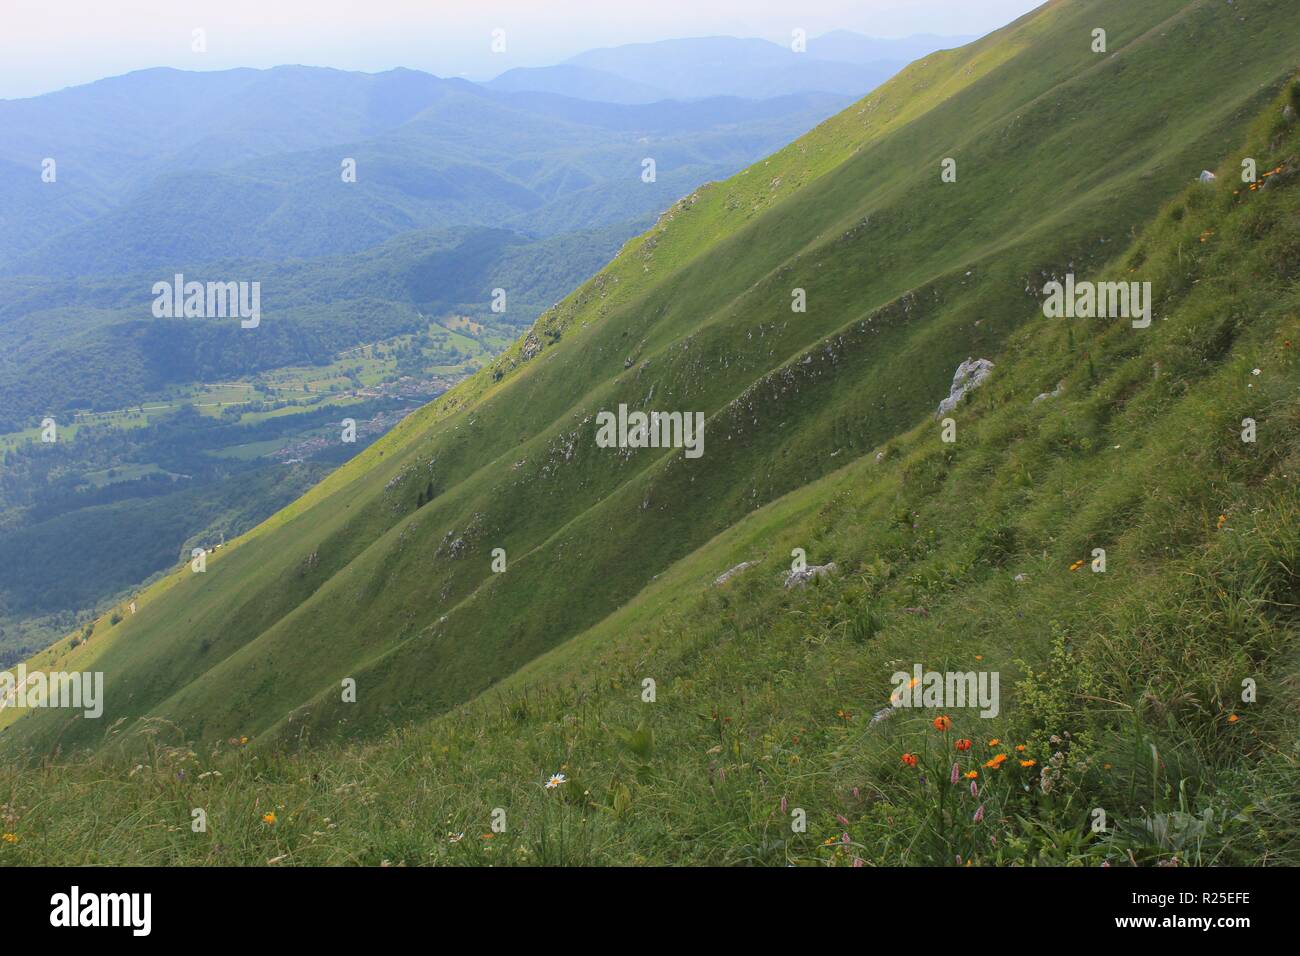 Alpine ripidi pendii del monte Kobariski Stol, sulle Alpi Giulie, Alpe Adria Trail, Slovenia, Europa centrale Foto Stock